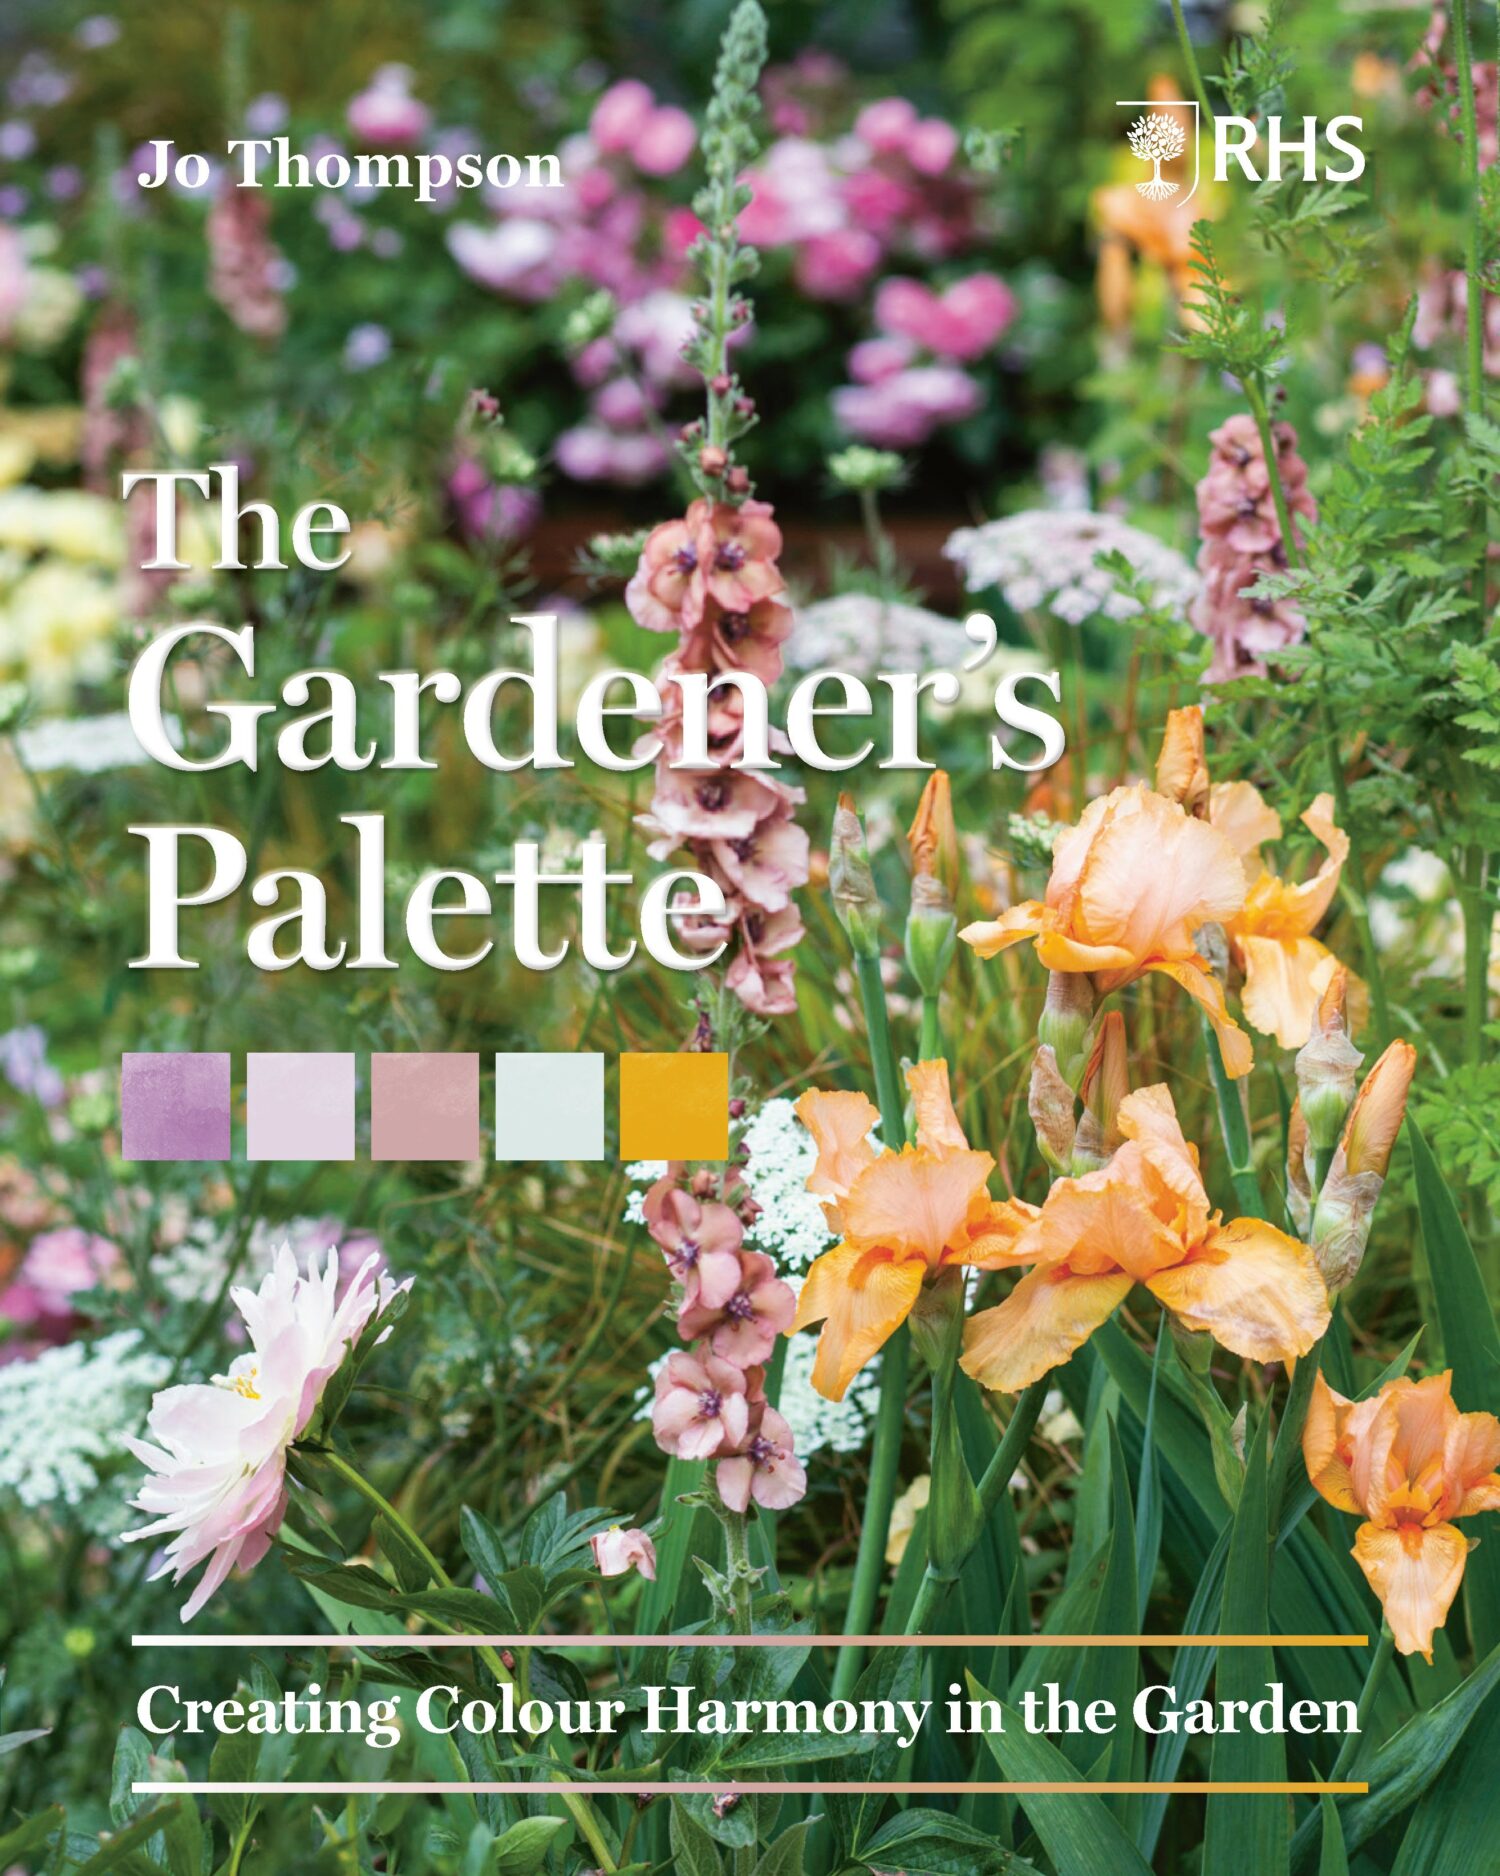 I MAESTRI DEL PAESAGGIO | Jo Thompson presenta il libro The Gardener’s Palette